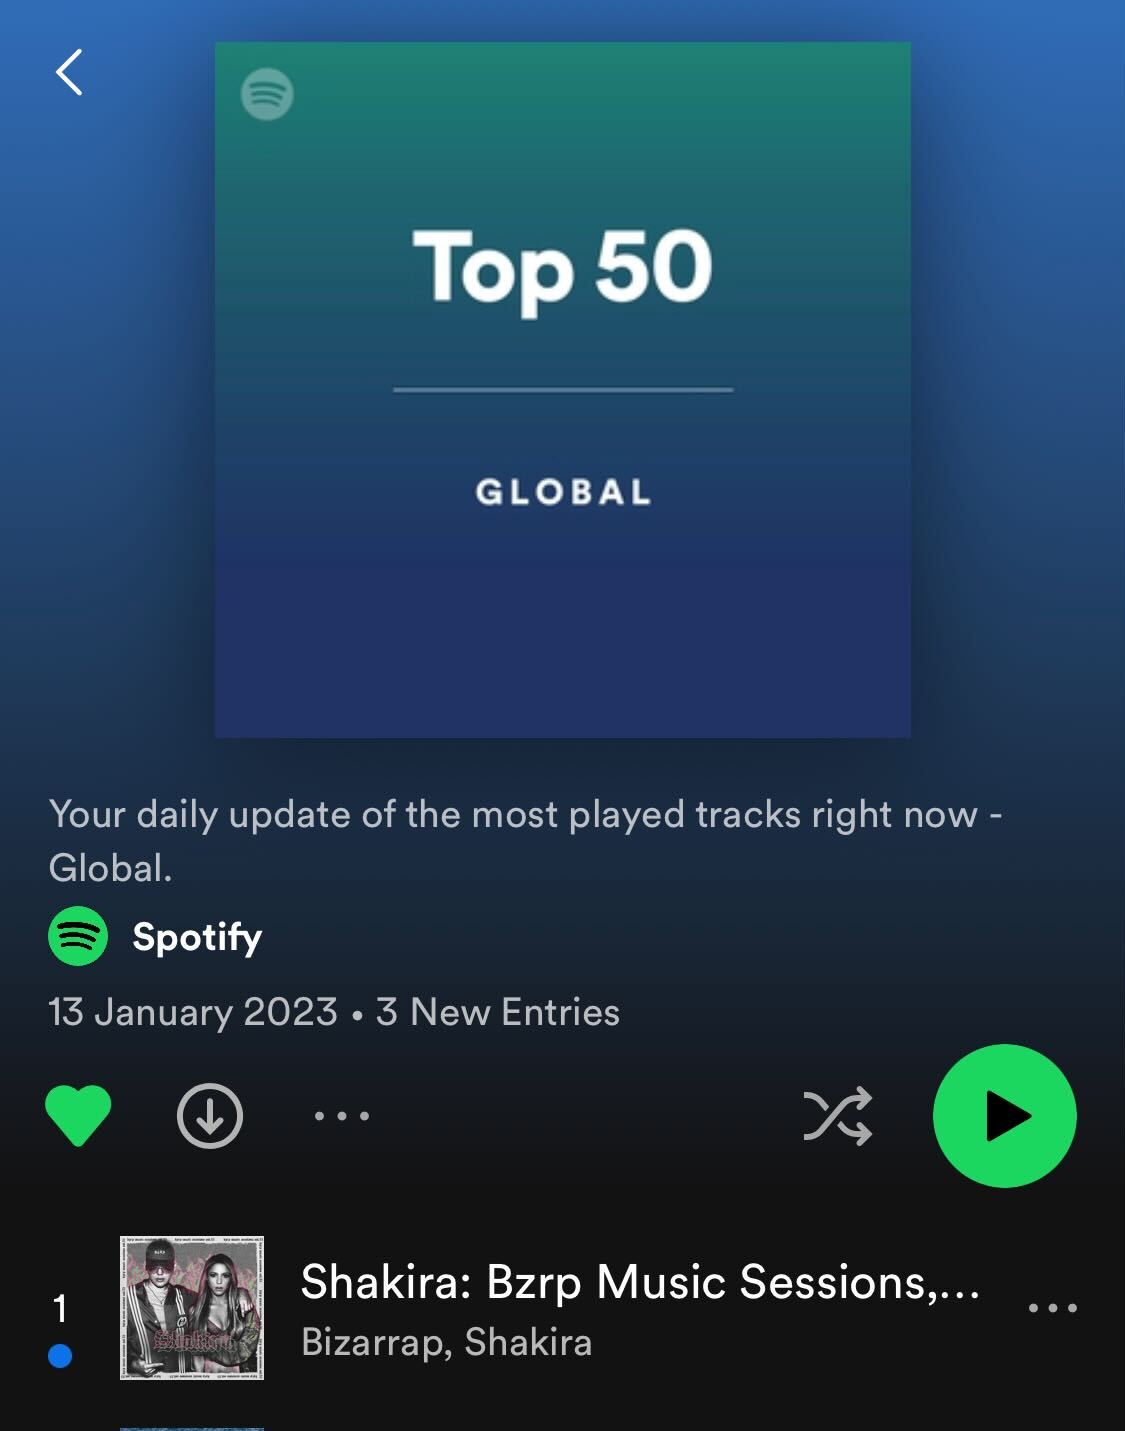 La canción de Shakira y Bizarrap encabeza el ranking global de Spotify